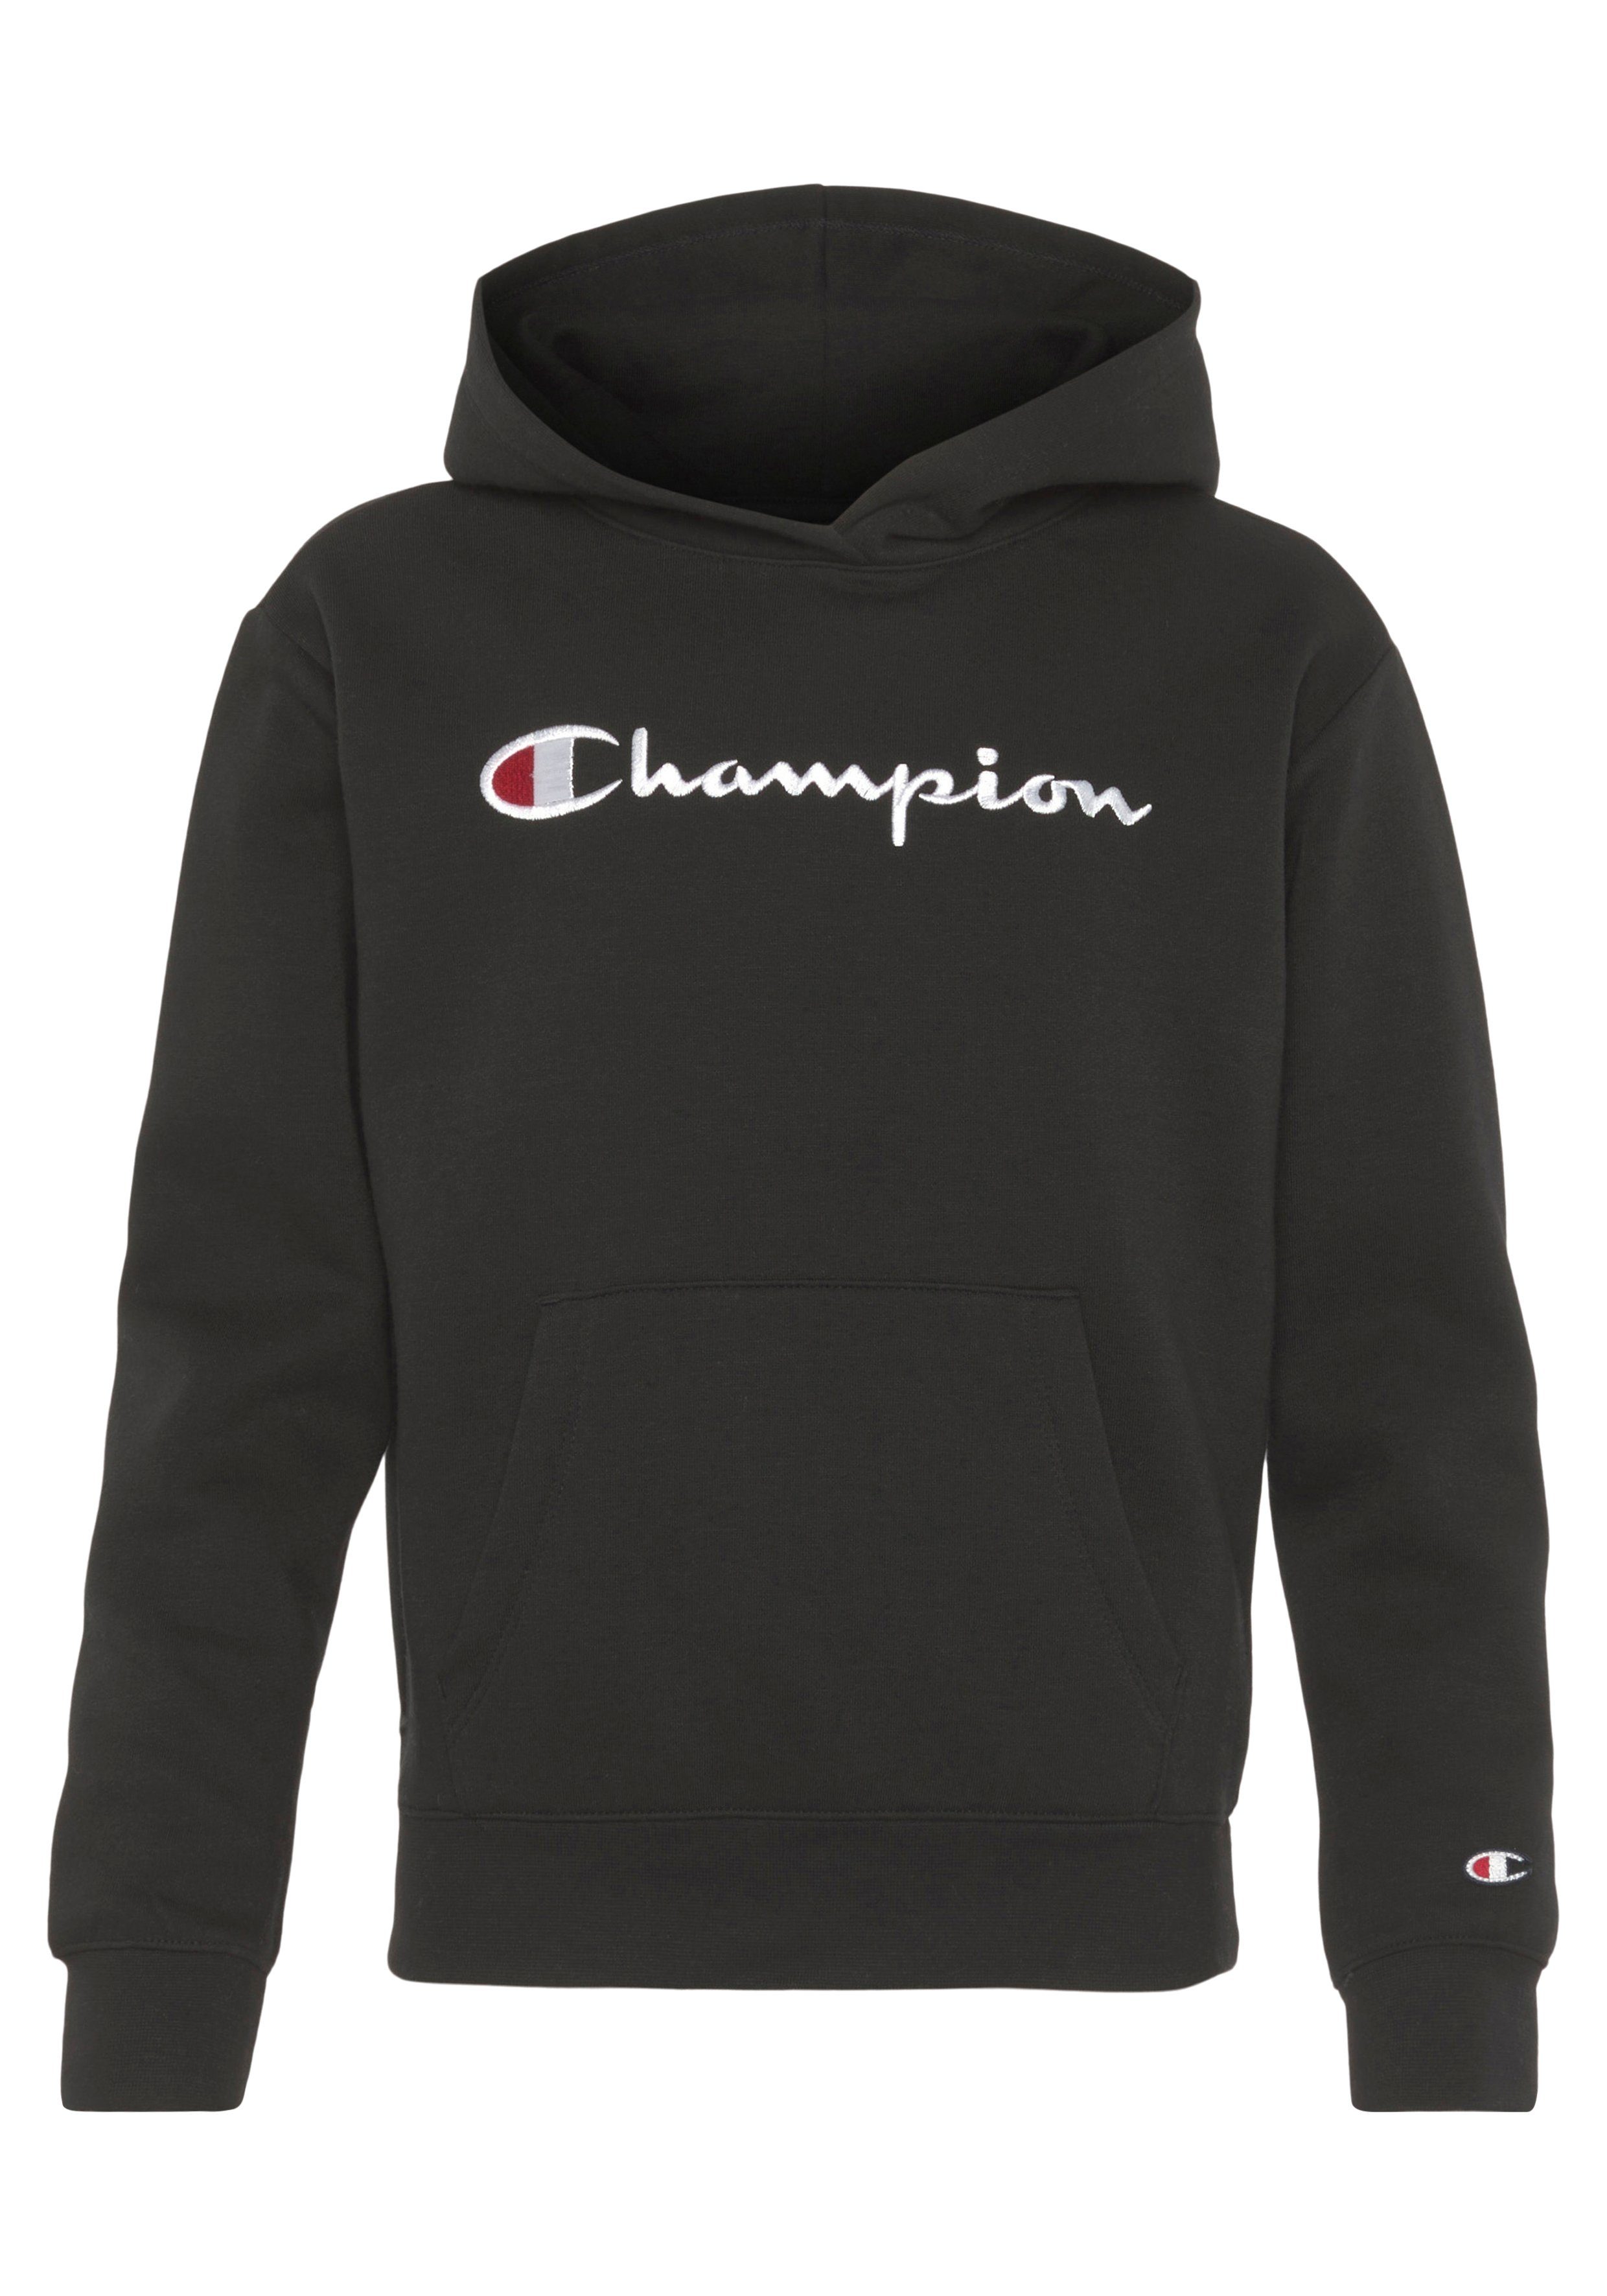 schwarz Sweatshirt Logo für Champion Hooded Sweatshirt large Kinder - Classic